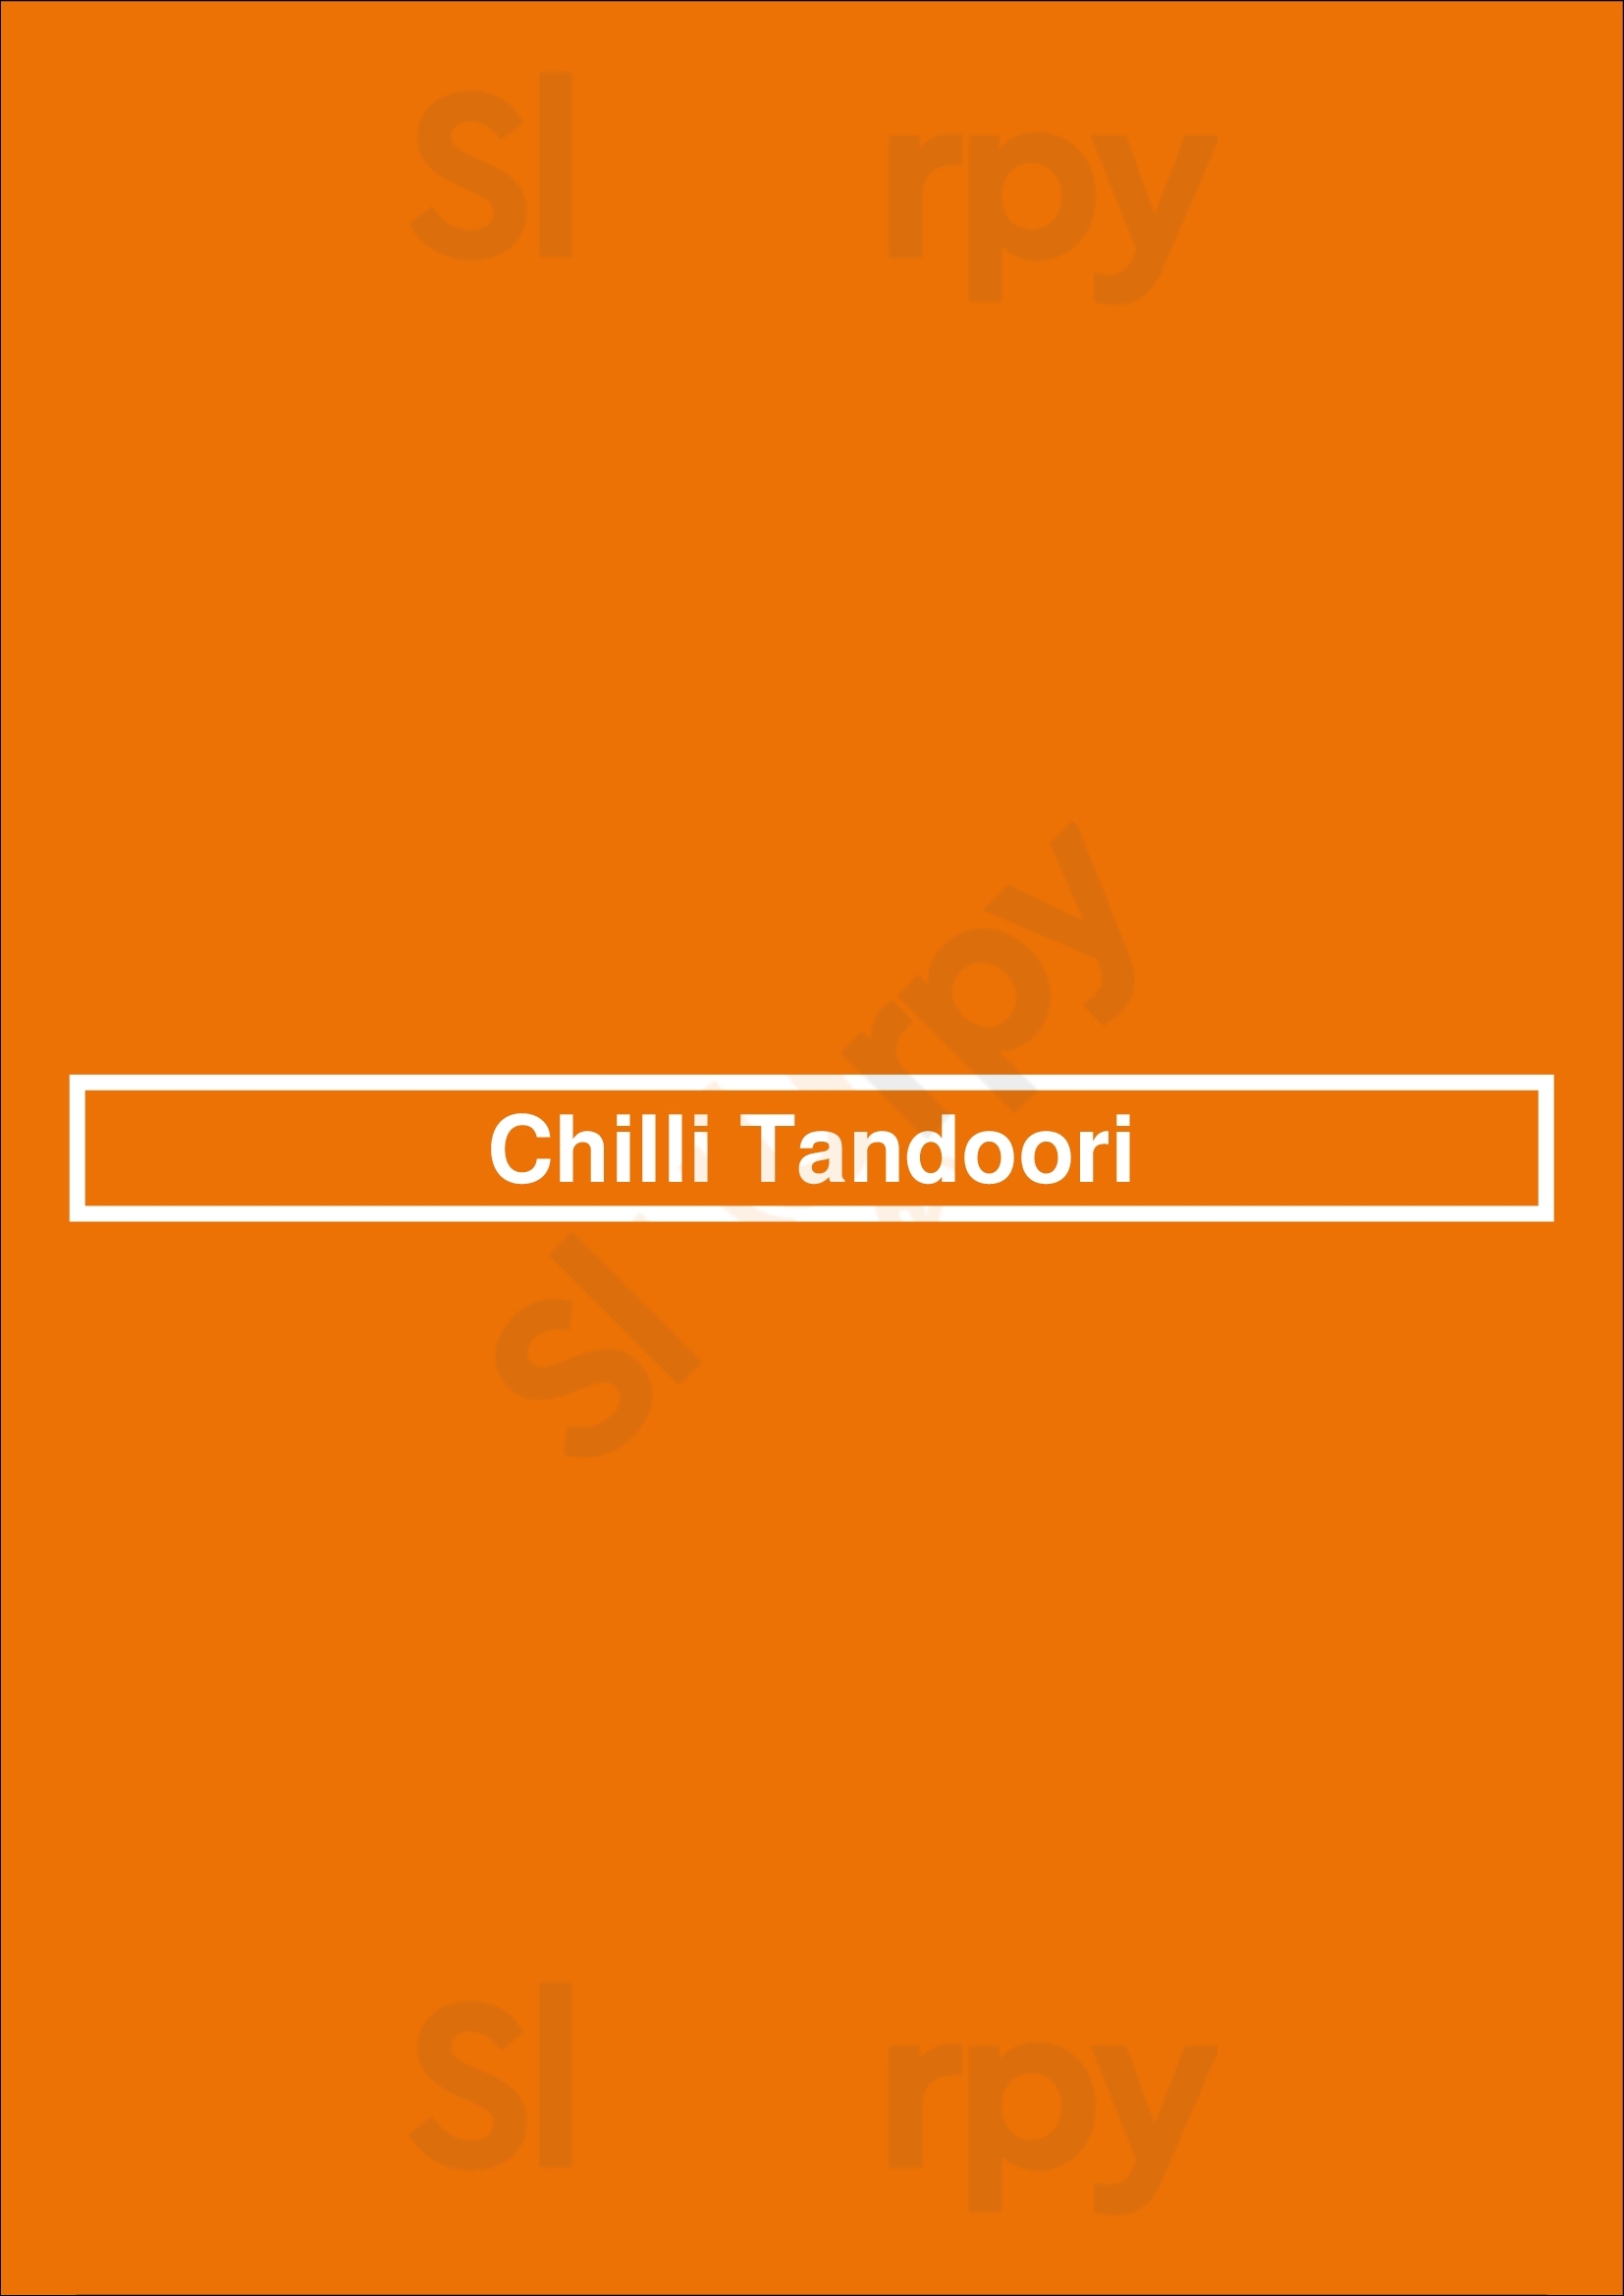 Chilli Tandoori Totton Menu - 1